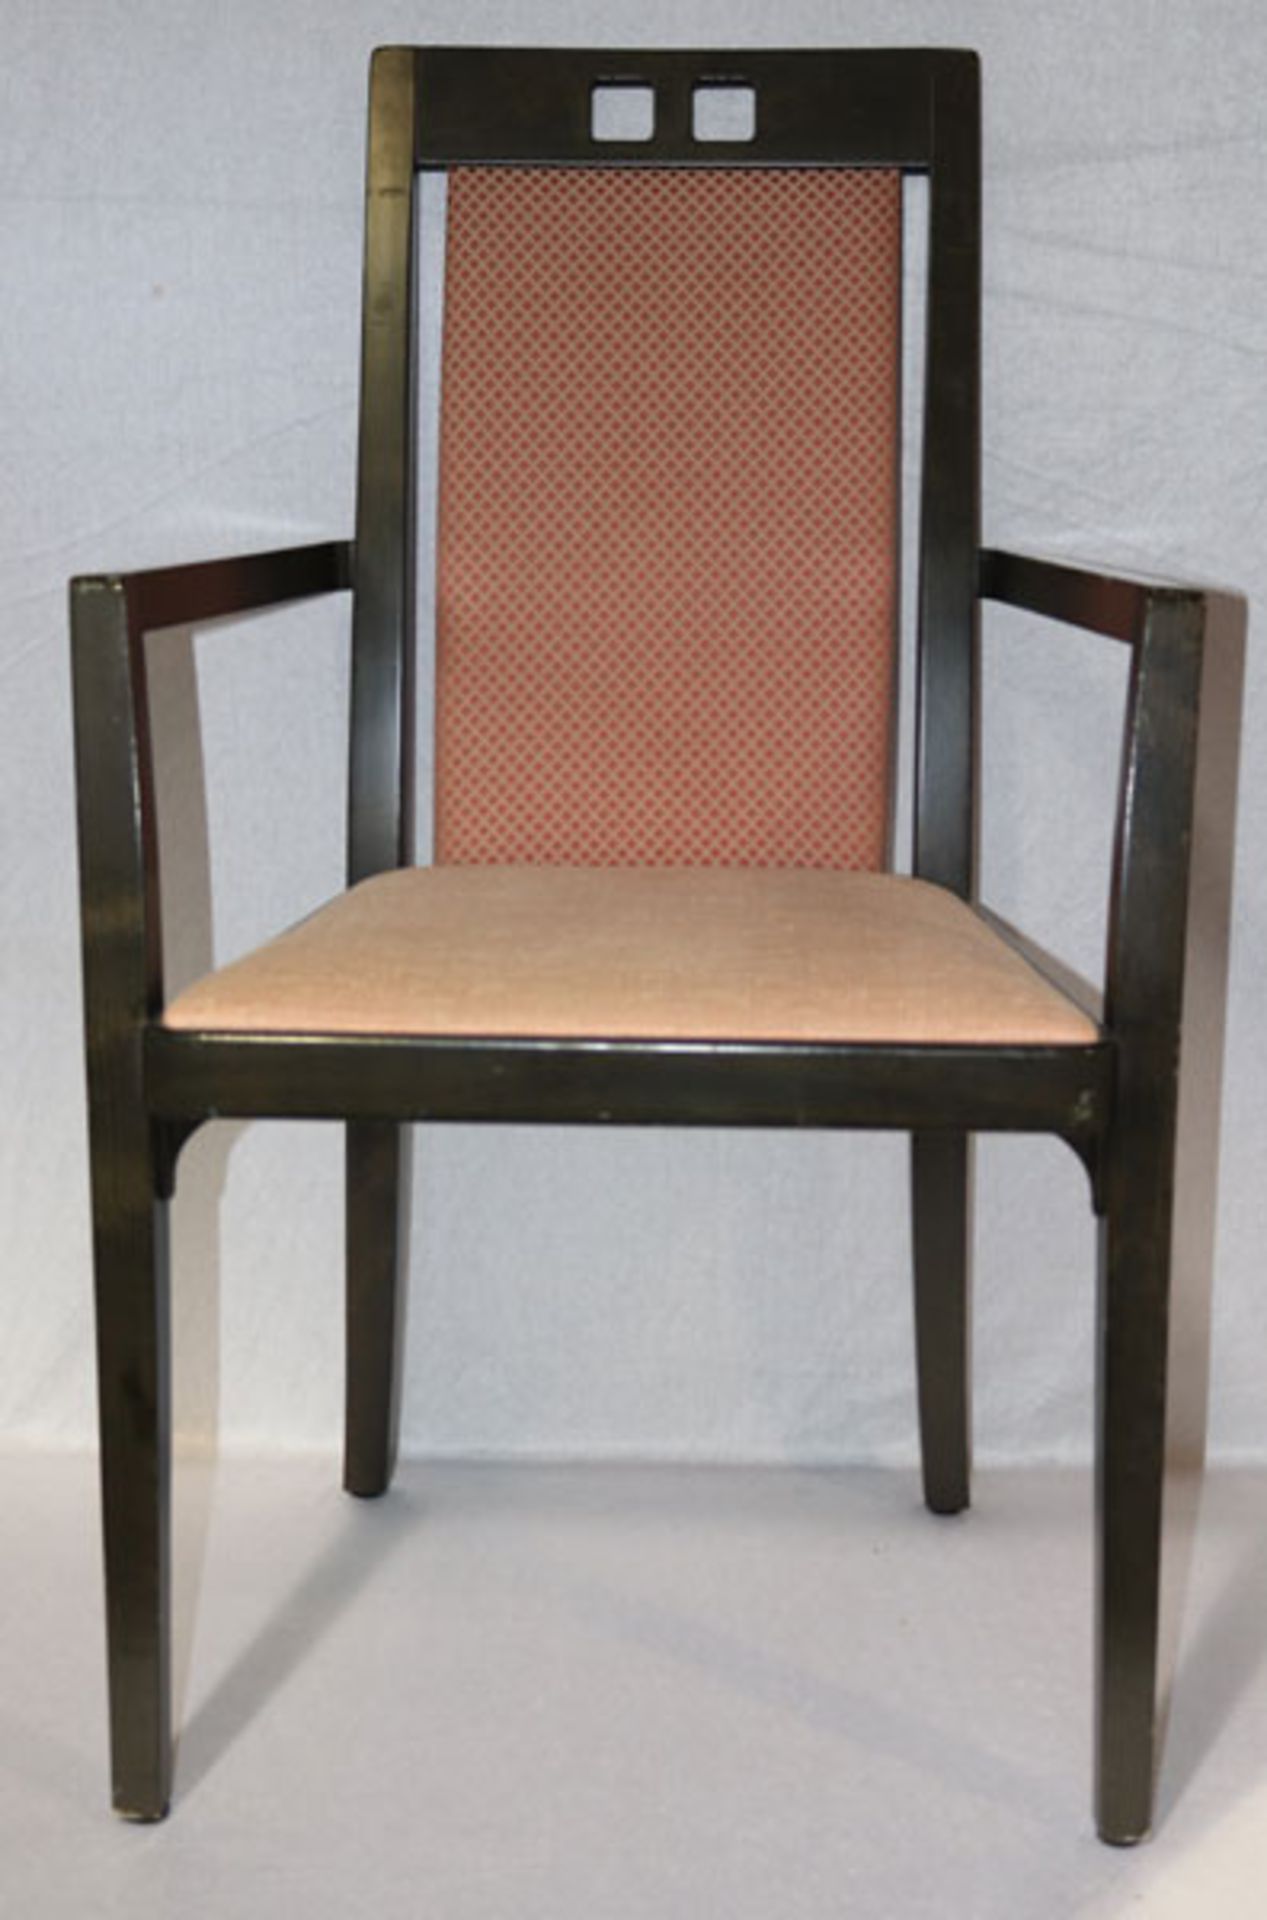 6 Thonet Stühle in gerader Form, Sitz und Lehne gepolstert und rot/beige bezogen, H 97 cm, B 56